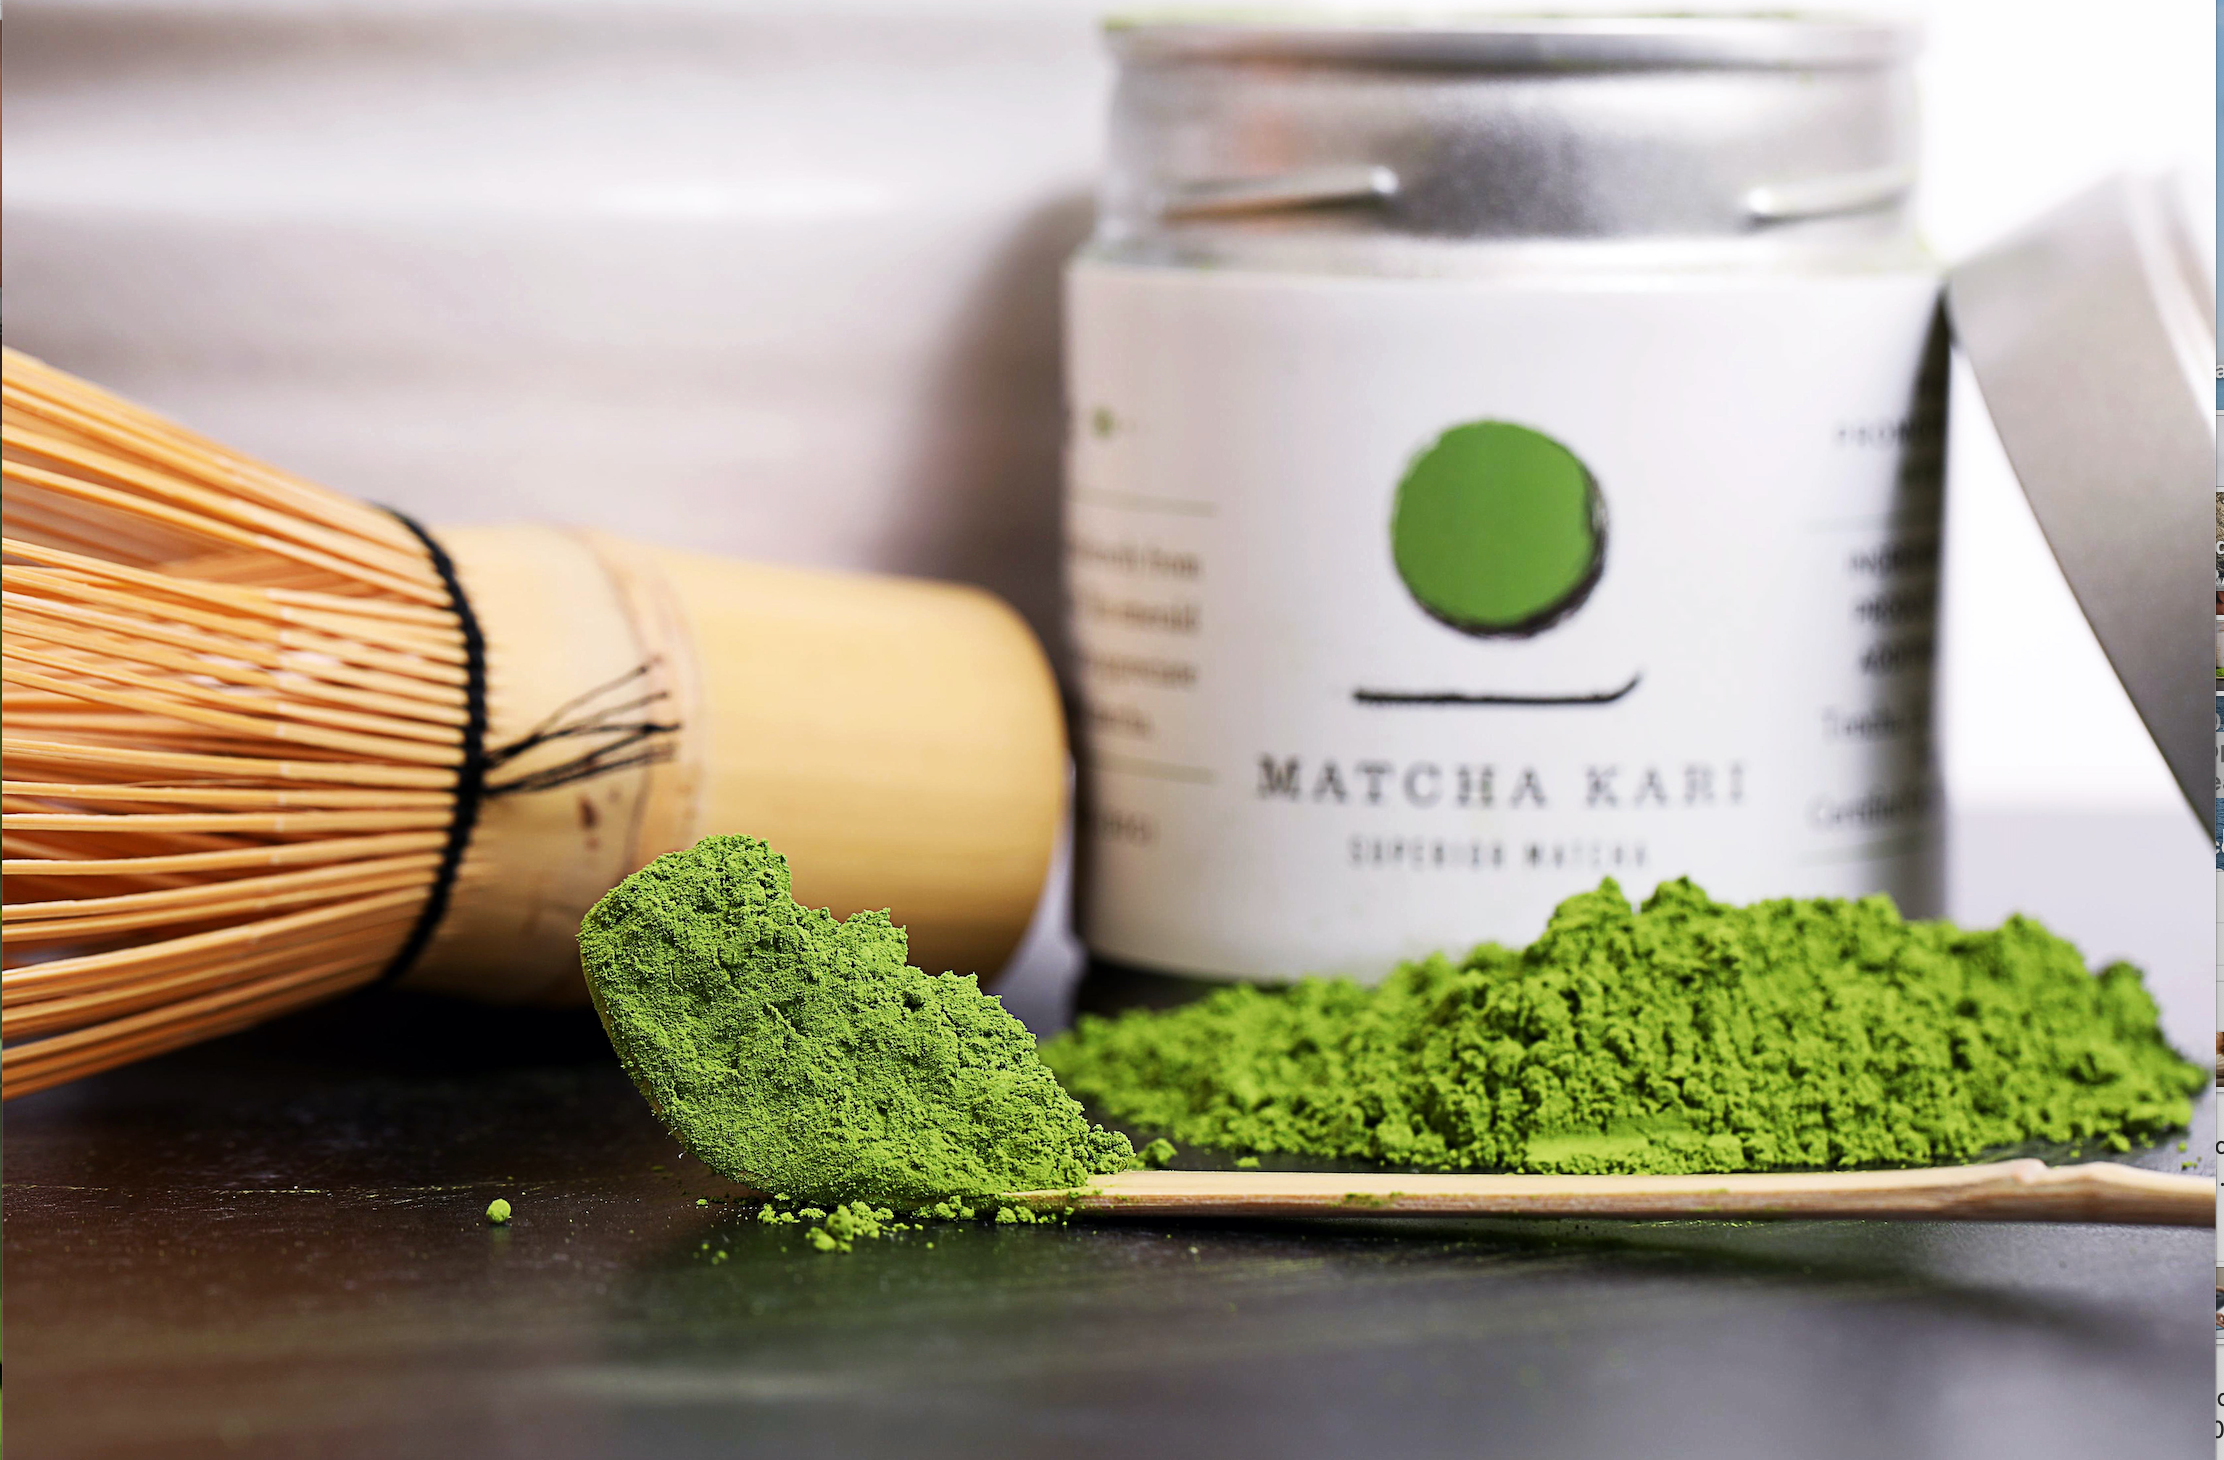 10 Proven Health Benefits Of Matcha Tea